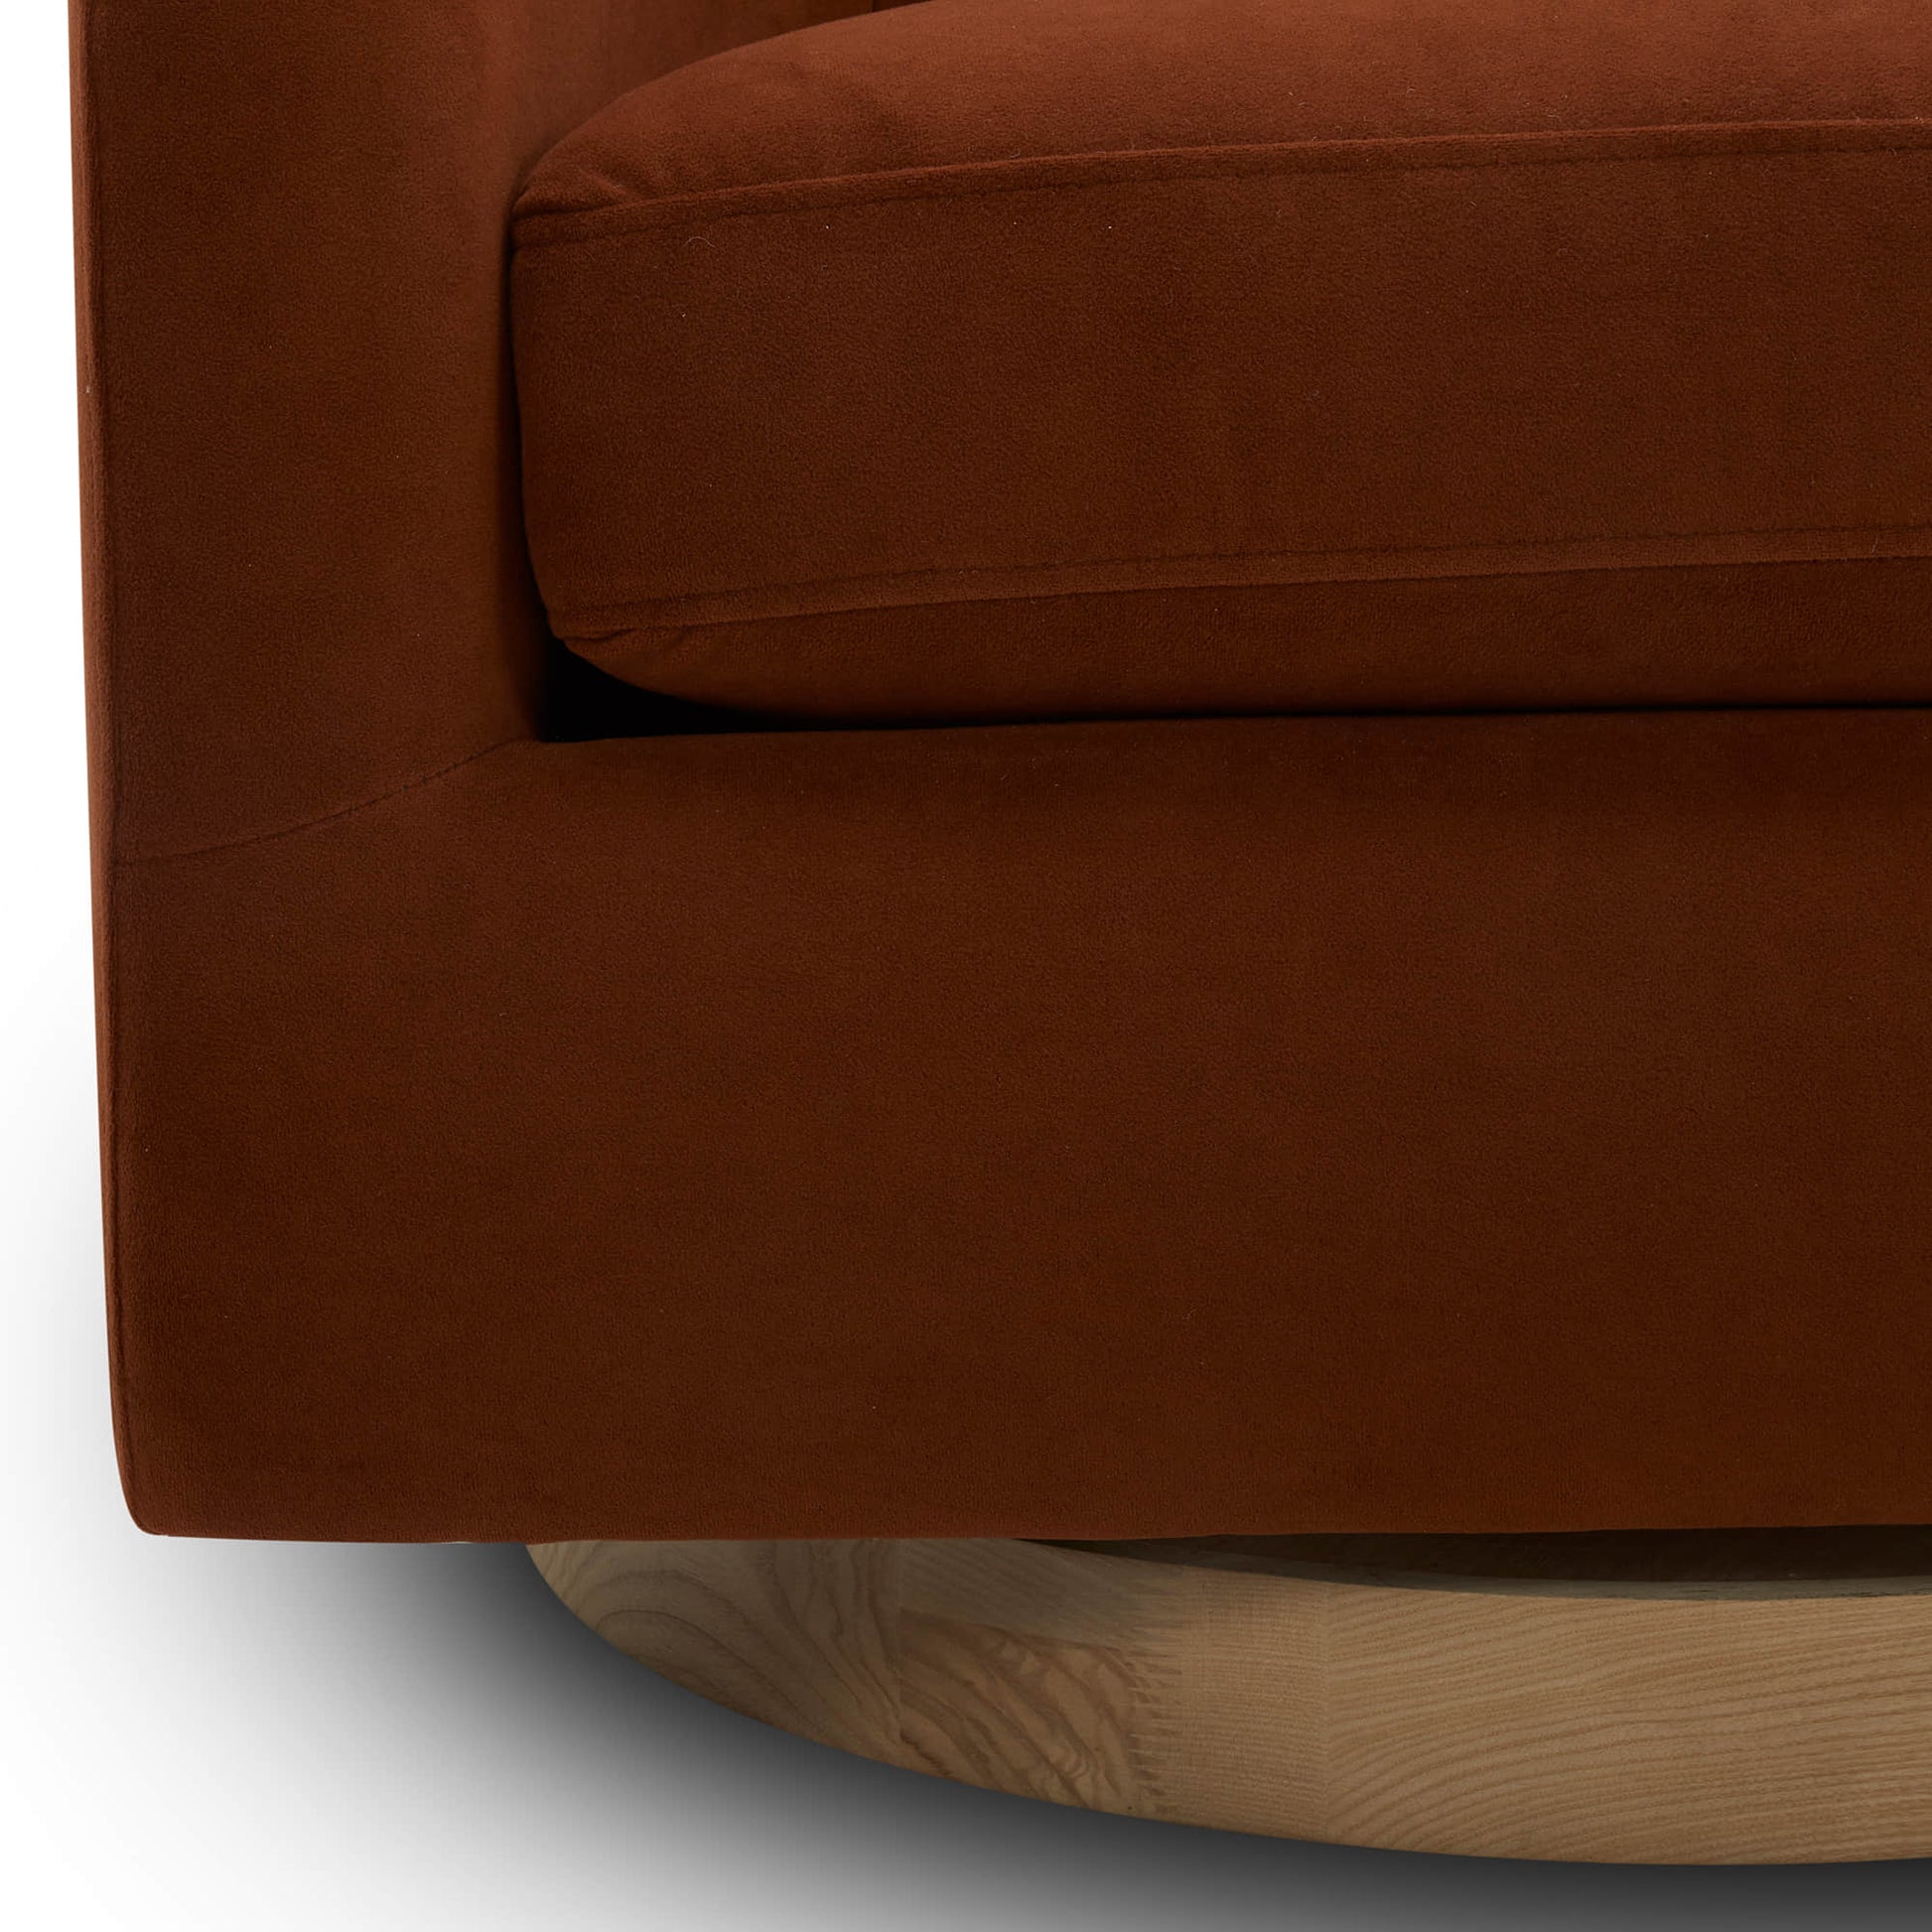 CHITA LIVING-Wren Modern Swivel Accent Chair-Accent Chair-Velvet-Burnt Orange-